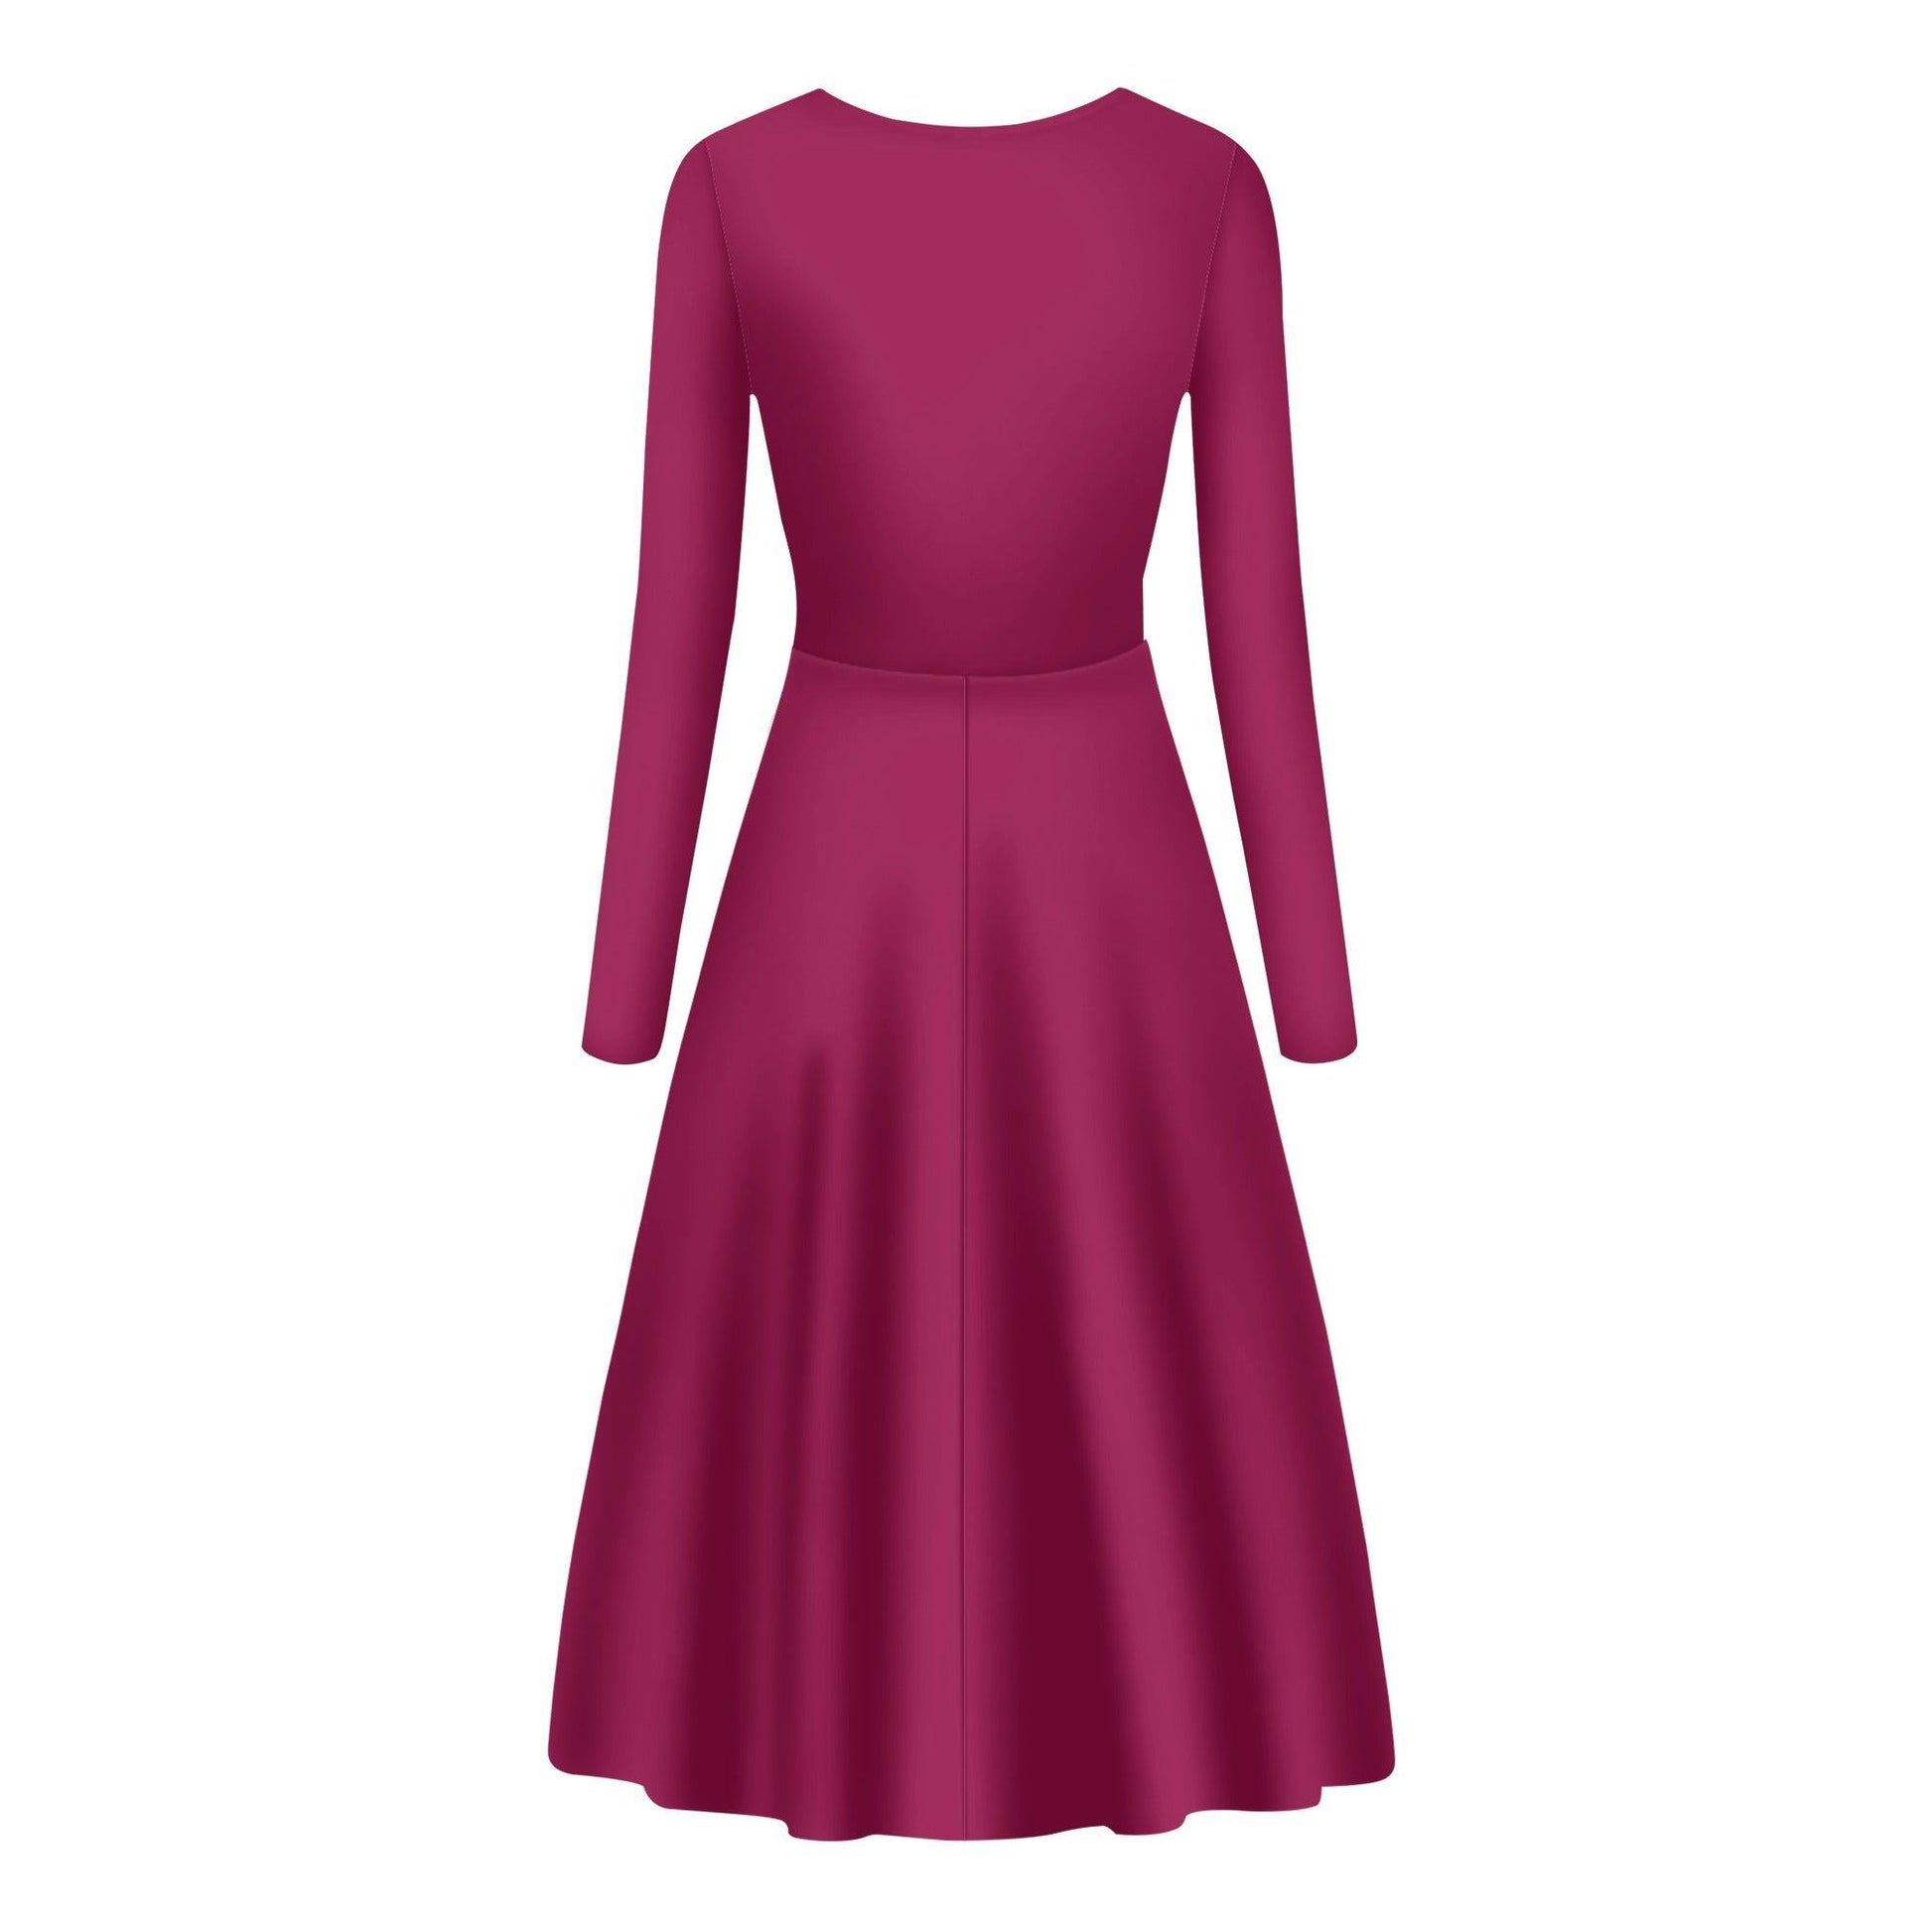 Burgund Long Sleeve Dress -- Burgund Long Sleeve Dress - undefined Long Sleeve Dress | JLR Design